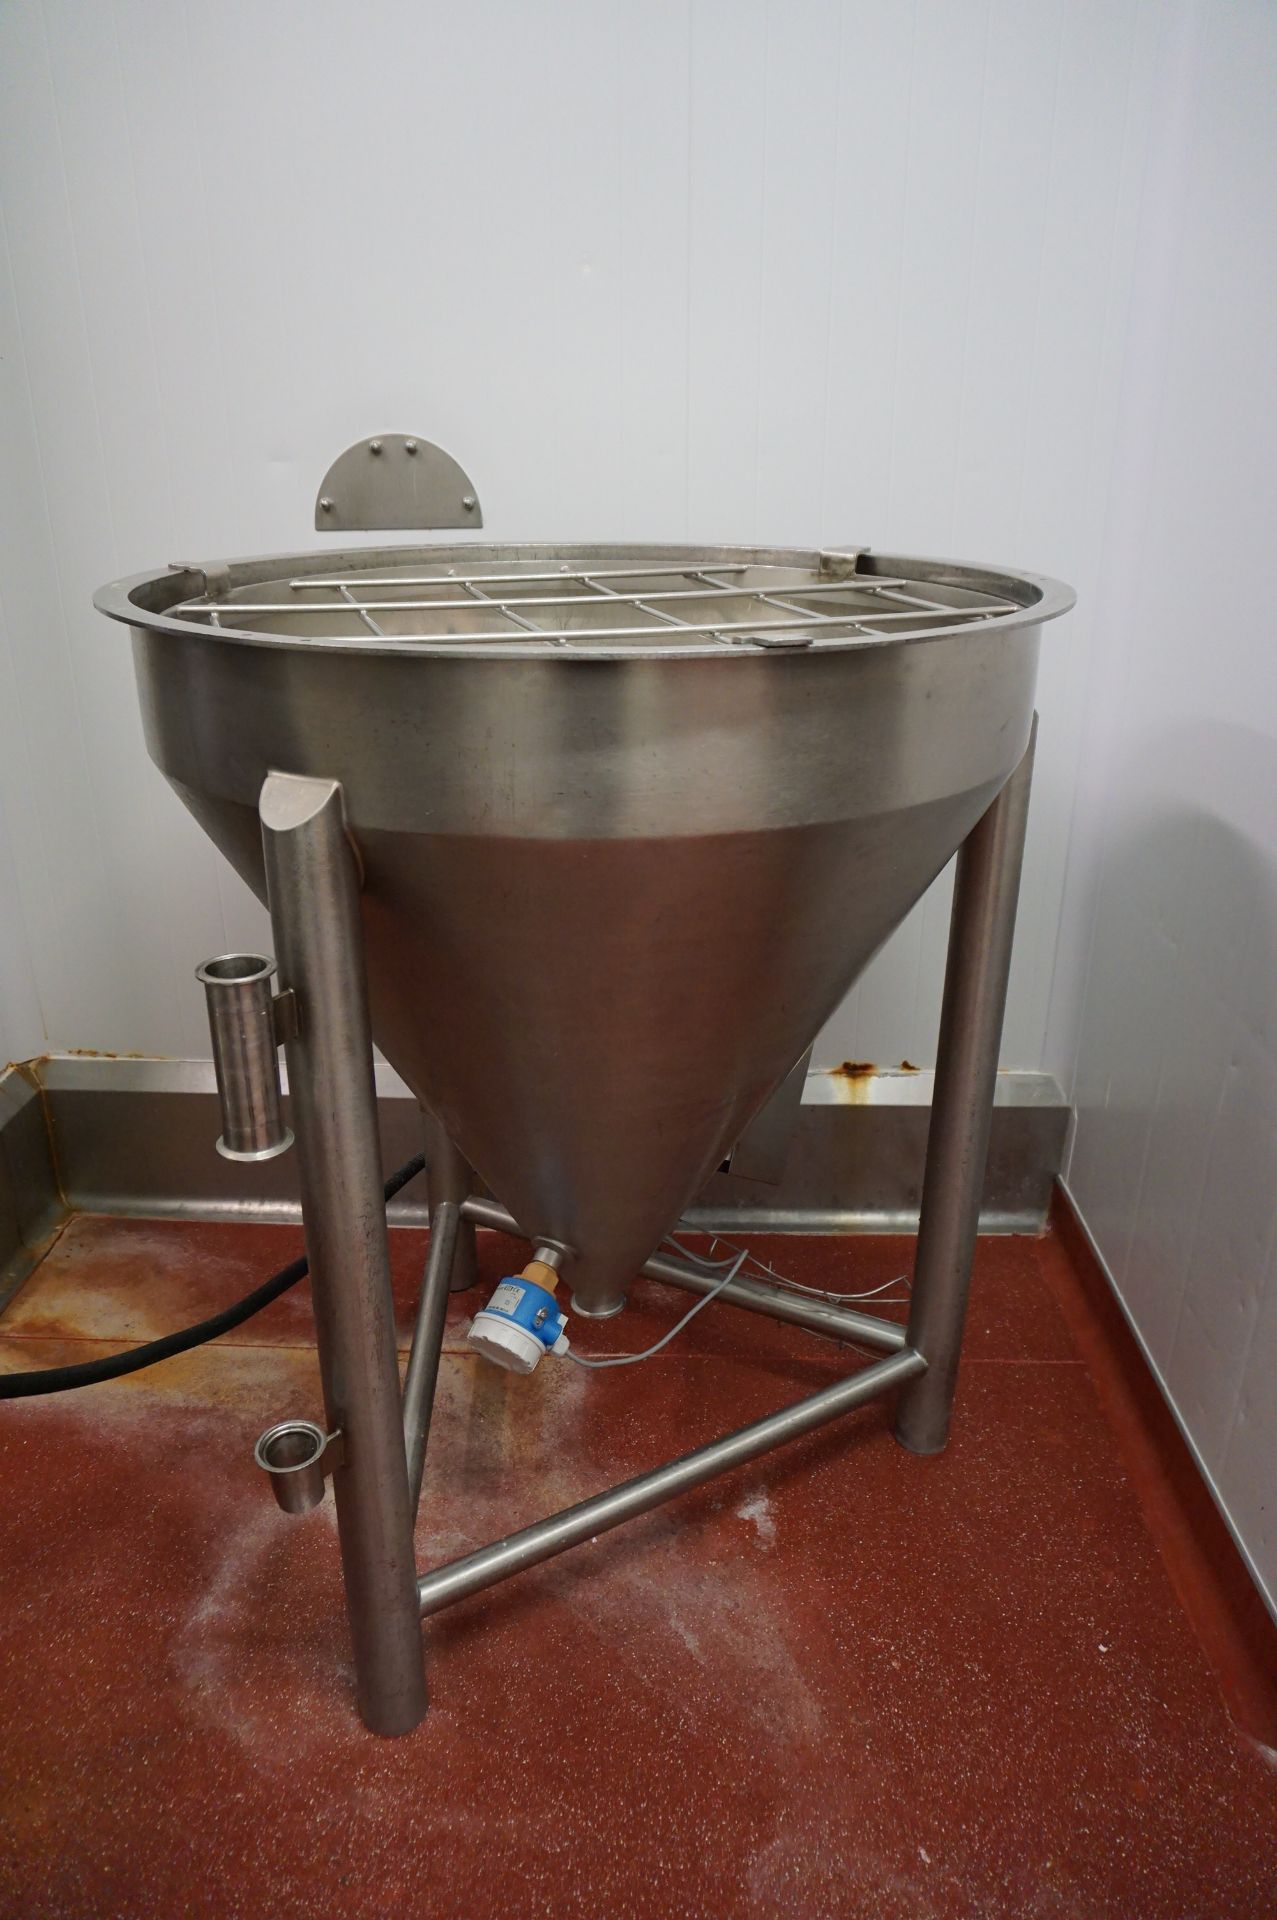 Scanima / Tetra-Pak Cooking Station Comprising: SPM1000V jacketed pressurised 1000L cooking vat, - Image 6 of 9